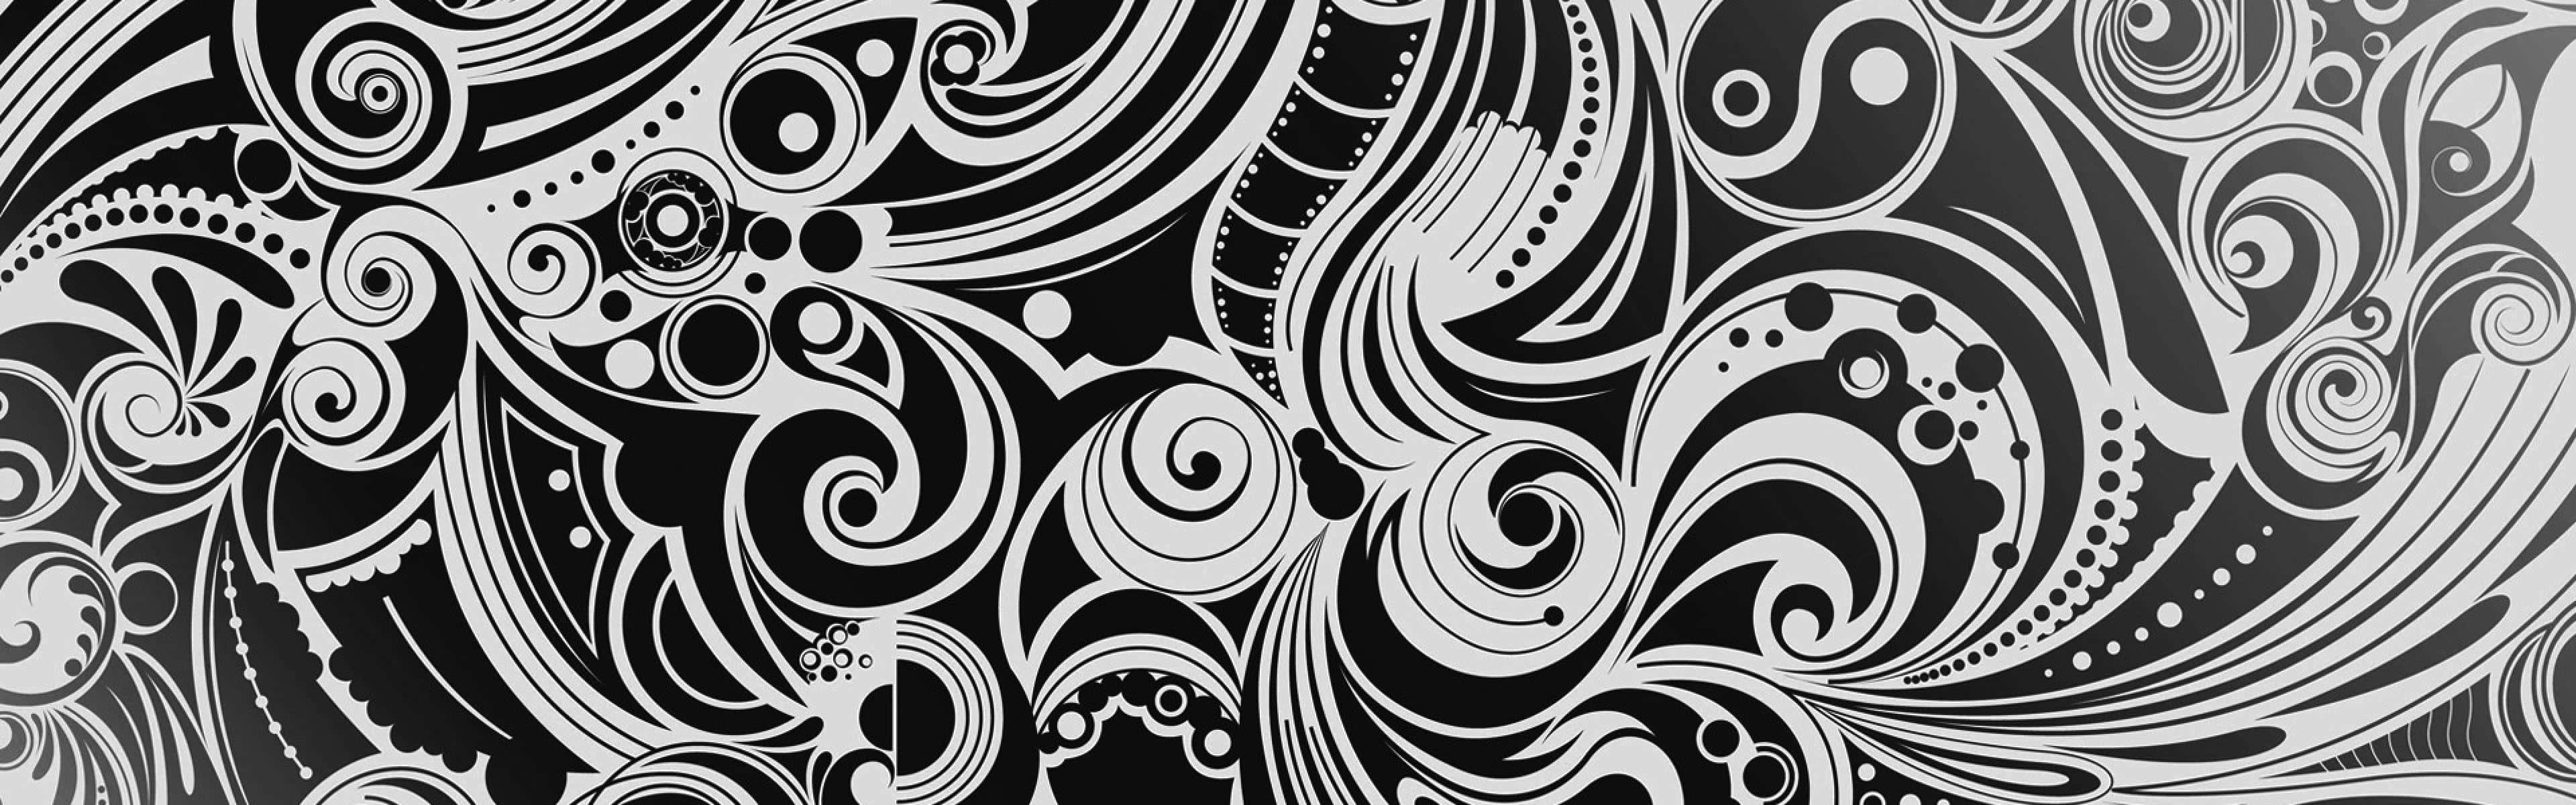 Patrónen Espiral En Blanco Y Negro, Impresión En Metal Fondo de pantalla